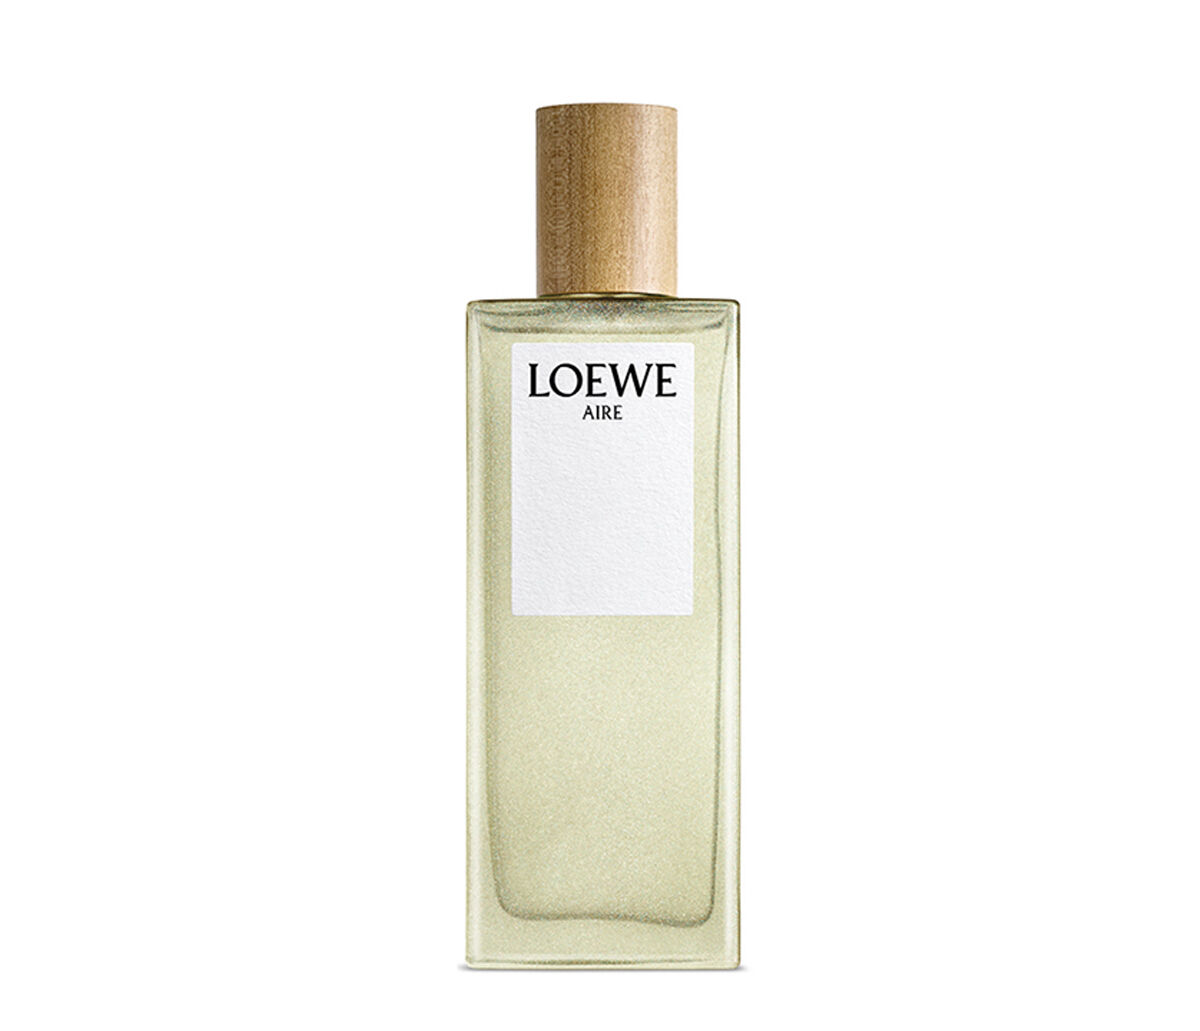 lowes perfume